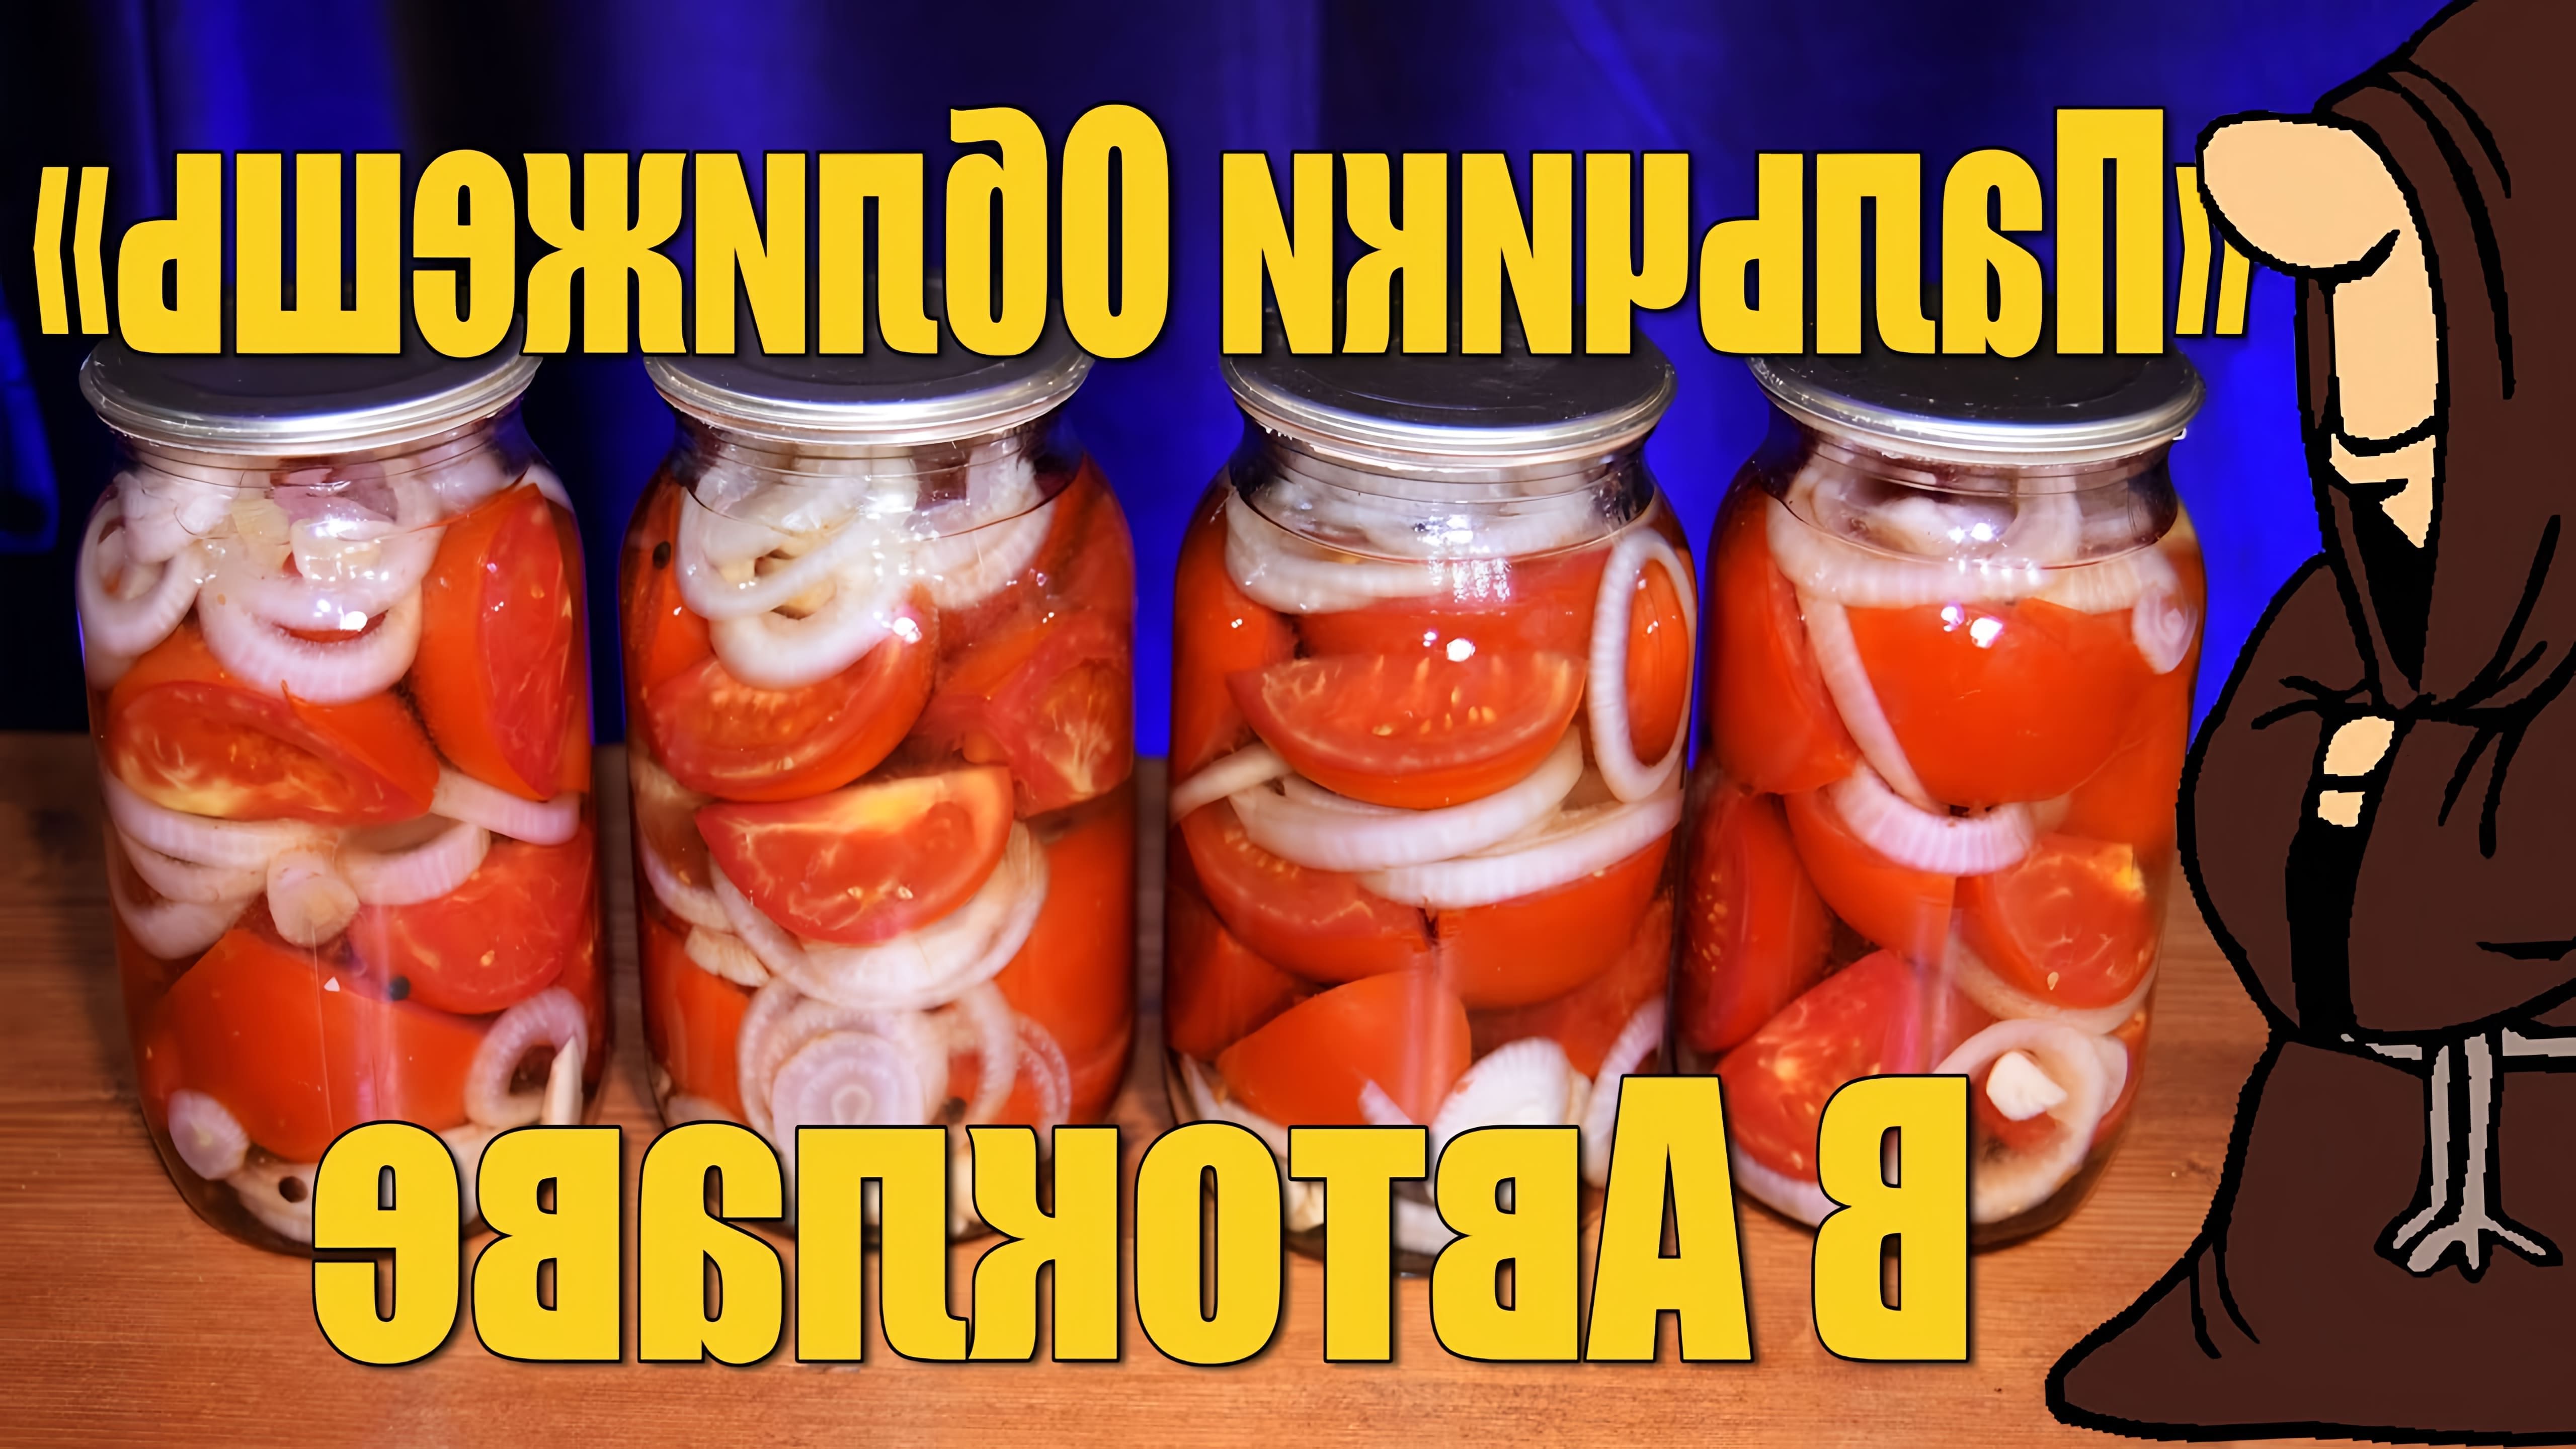 Видео показывает рецепт консервирования помидоров в банках на зиму